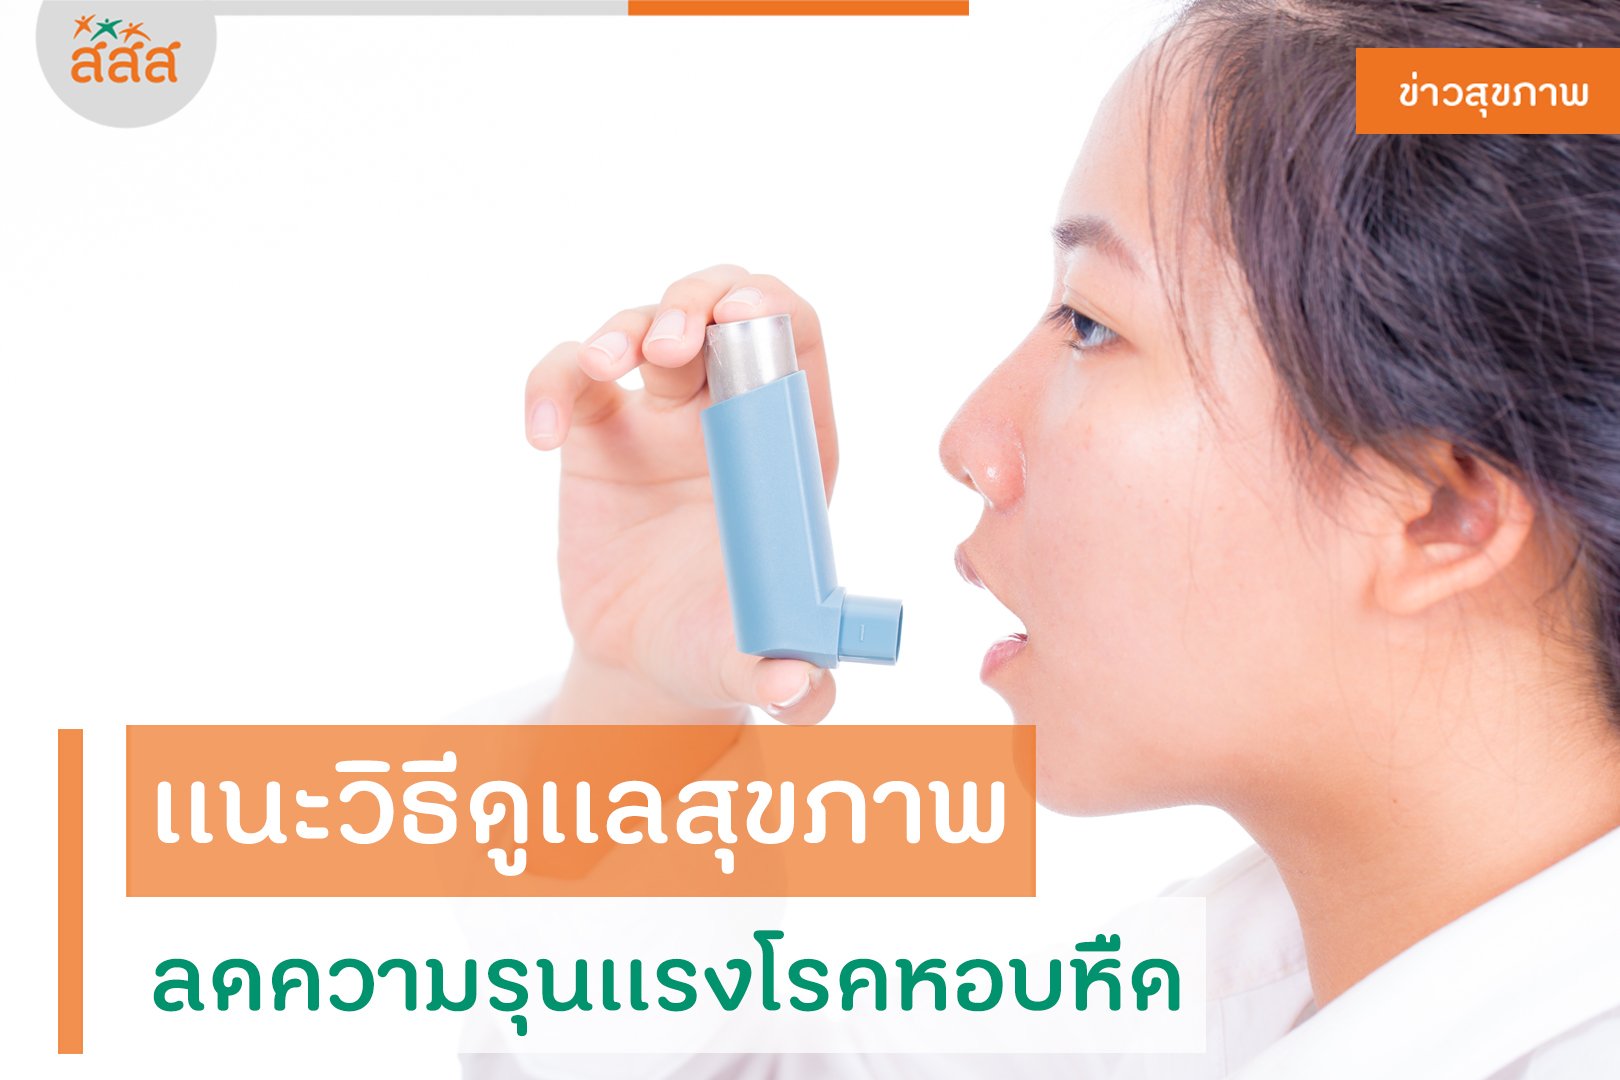 แนะวิธีดูเเลสุขภาพ ลดความรุนเเรงโรคหอบหืด thaihealth